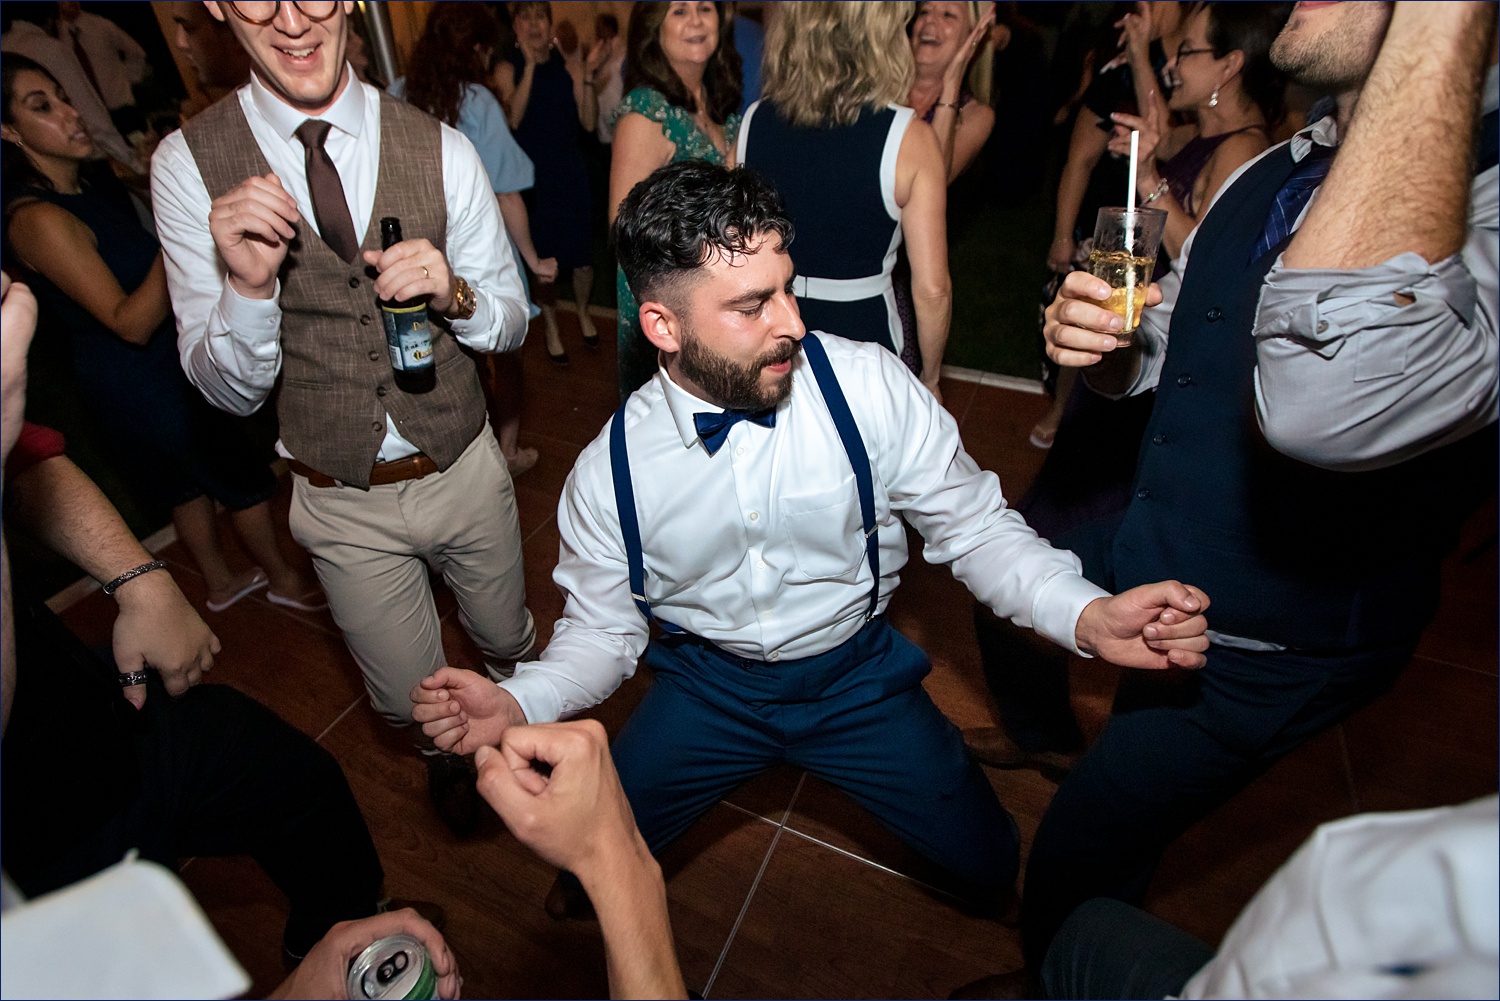 The groom parties on the dance floor 